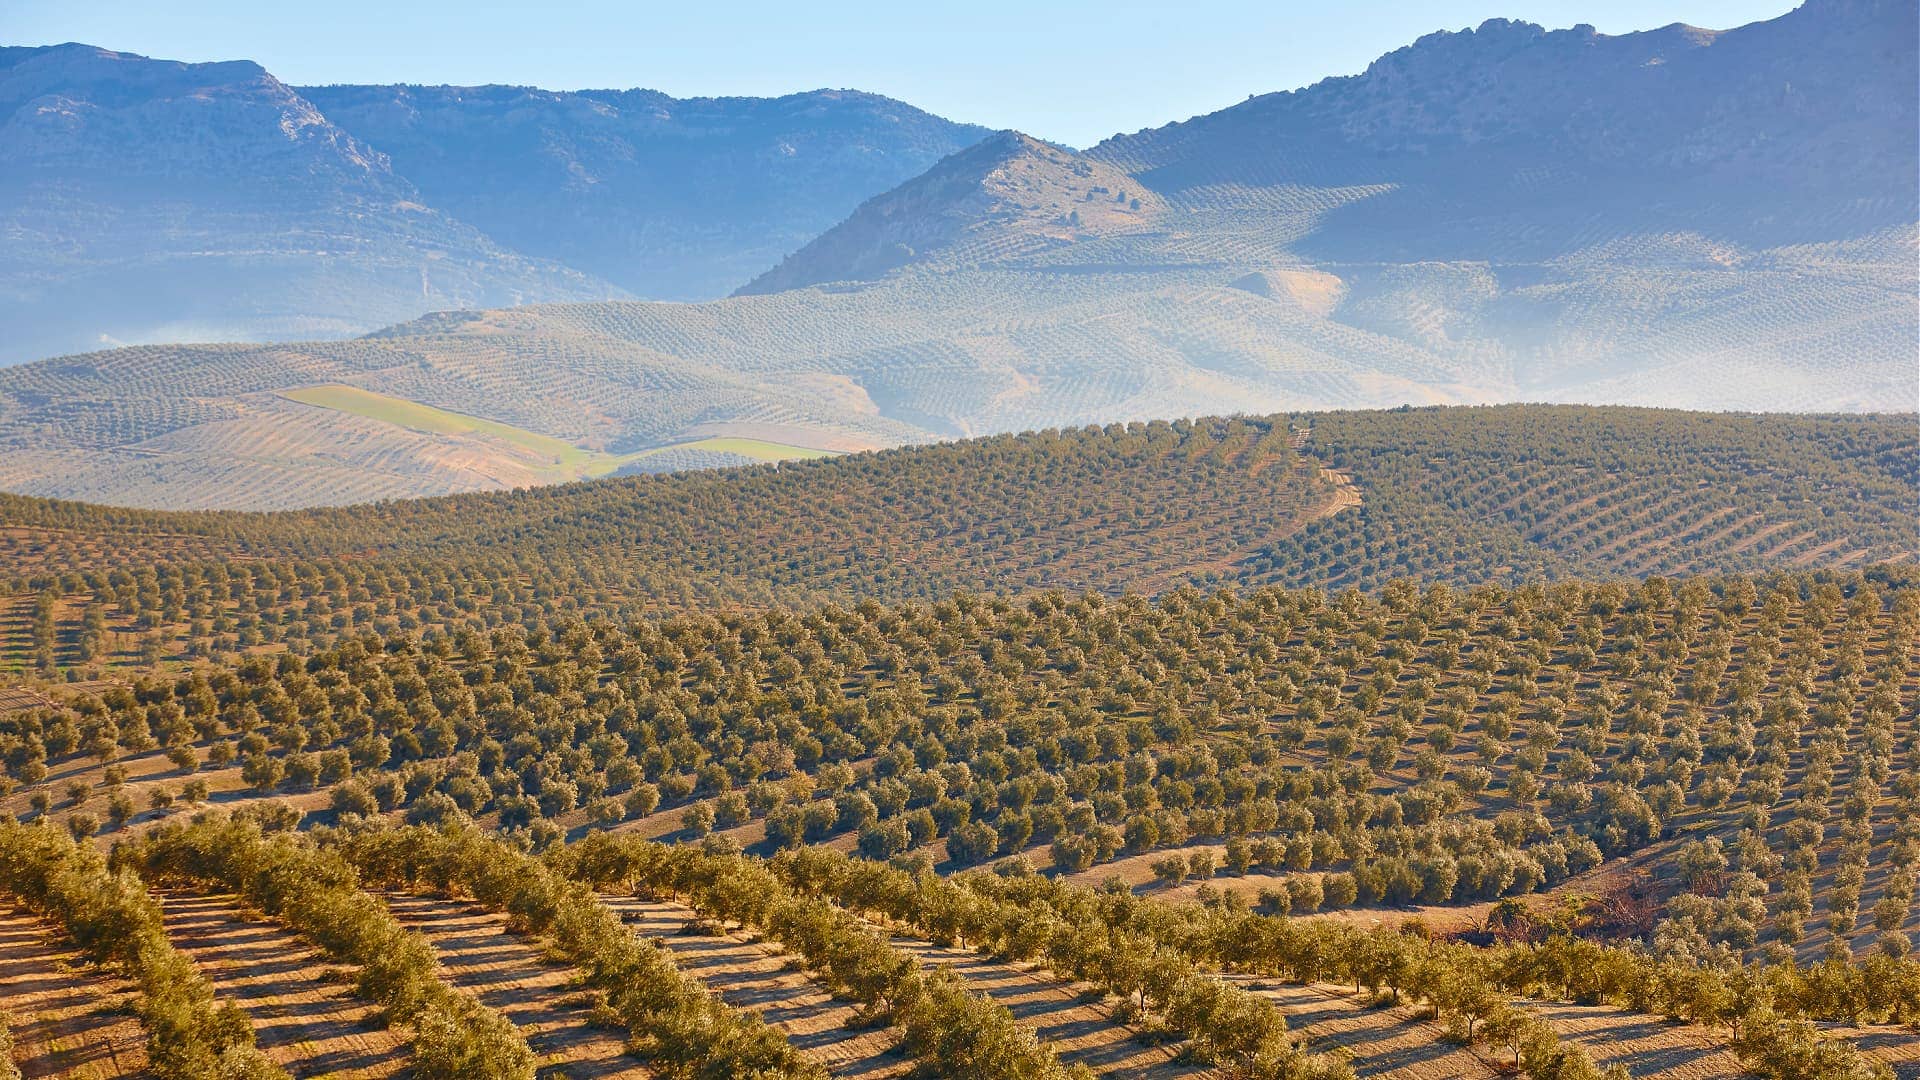 europa-produktionsgeschäft-klimawandel-macht-einen-zoll-auf-andalusisches-olivenol-produktion-olivenol-zeiten